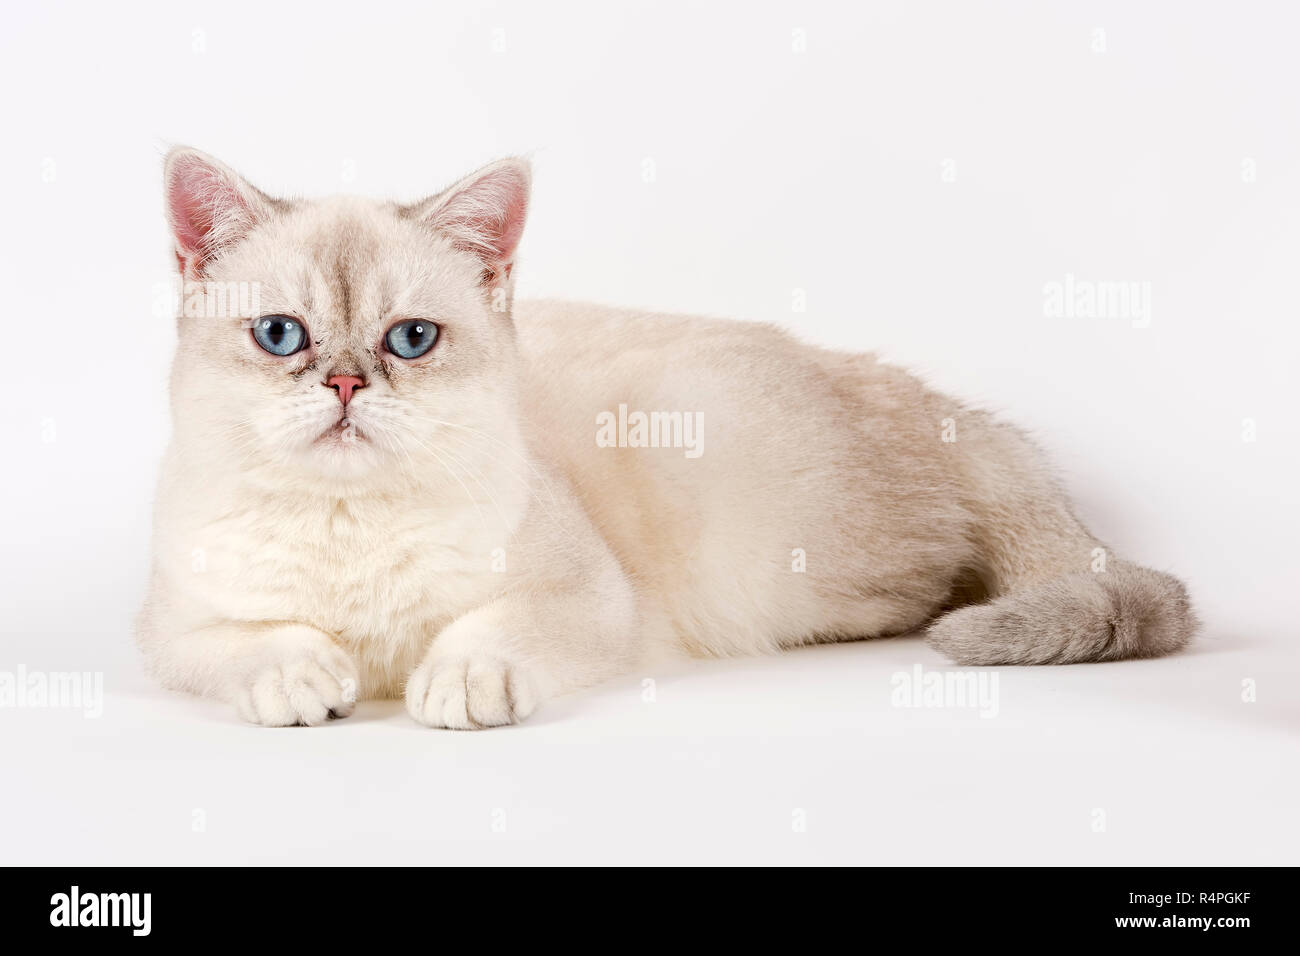 cat british shorthair 14521 Stock Photo